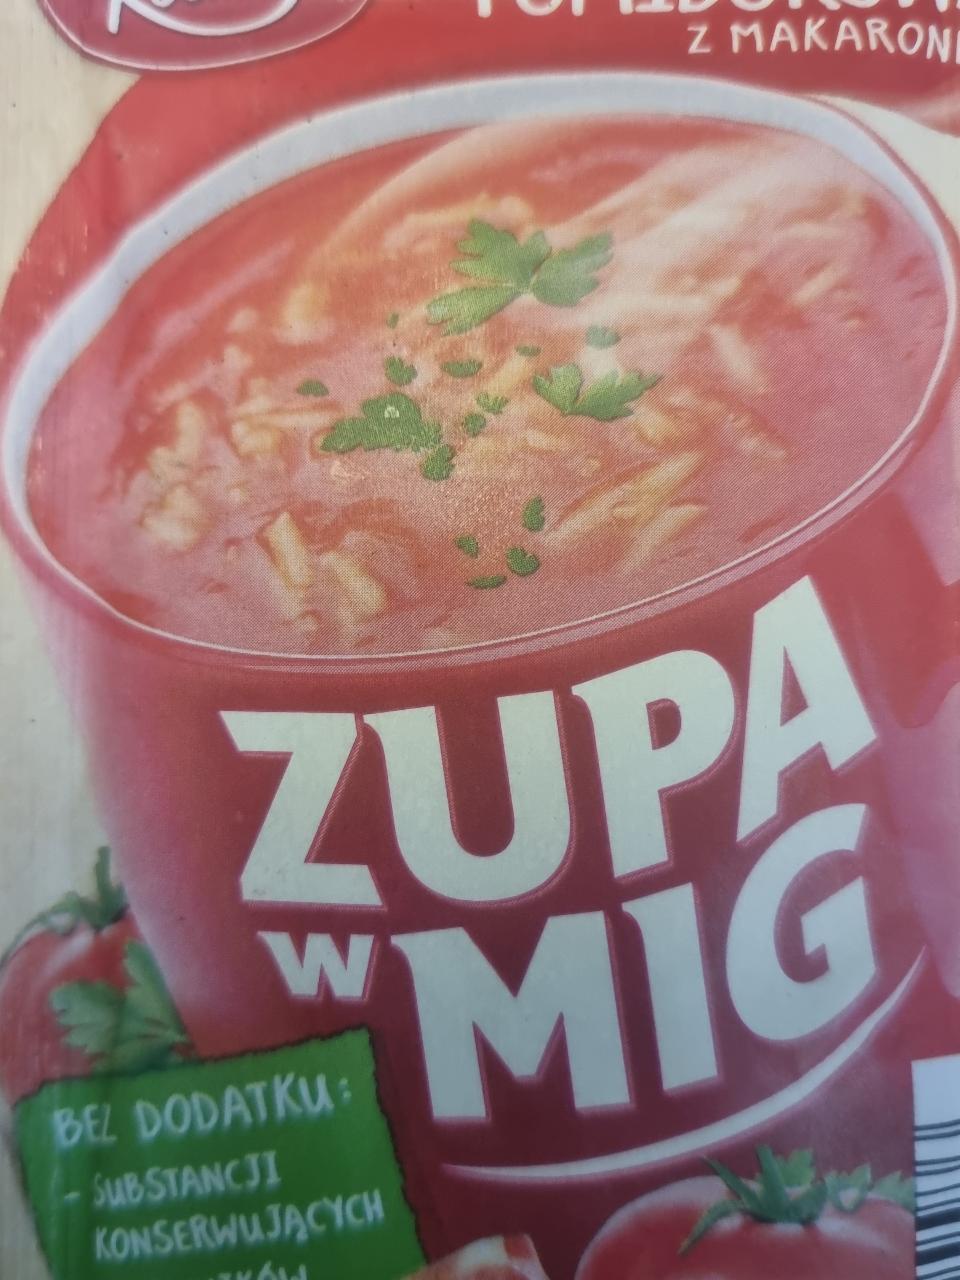 Фото - Суп томатный с вермишелью быстрого приготовления Pomidorowa z makaronem Kania